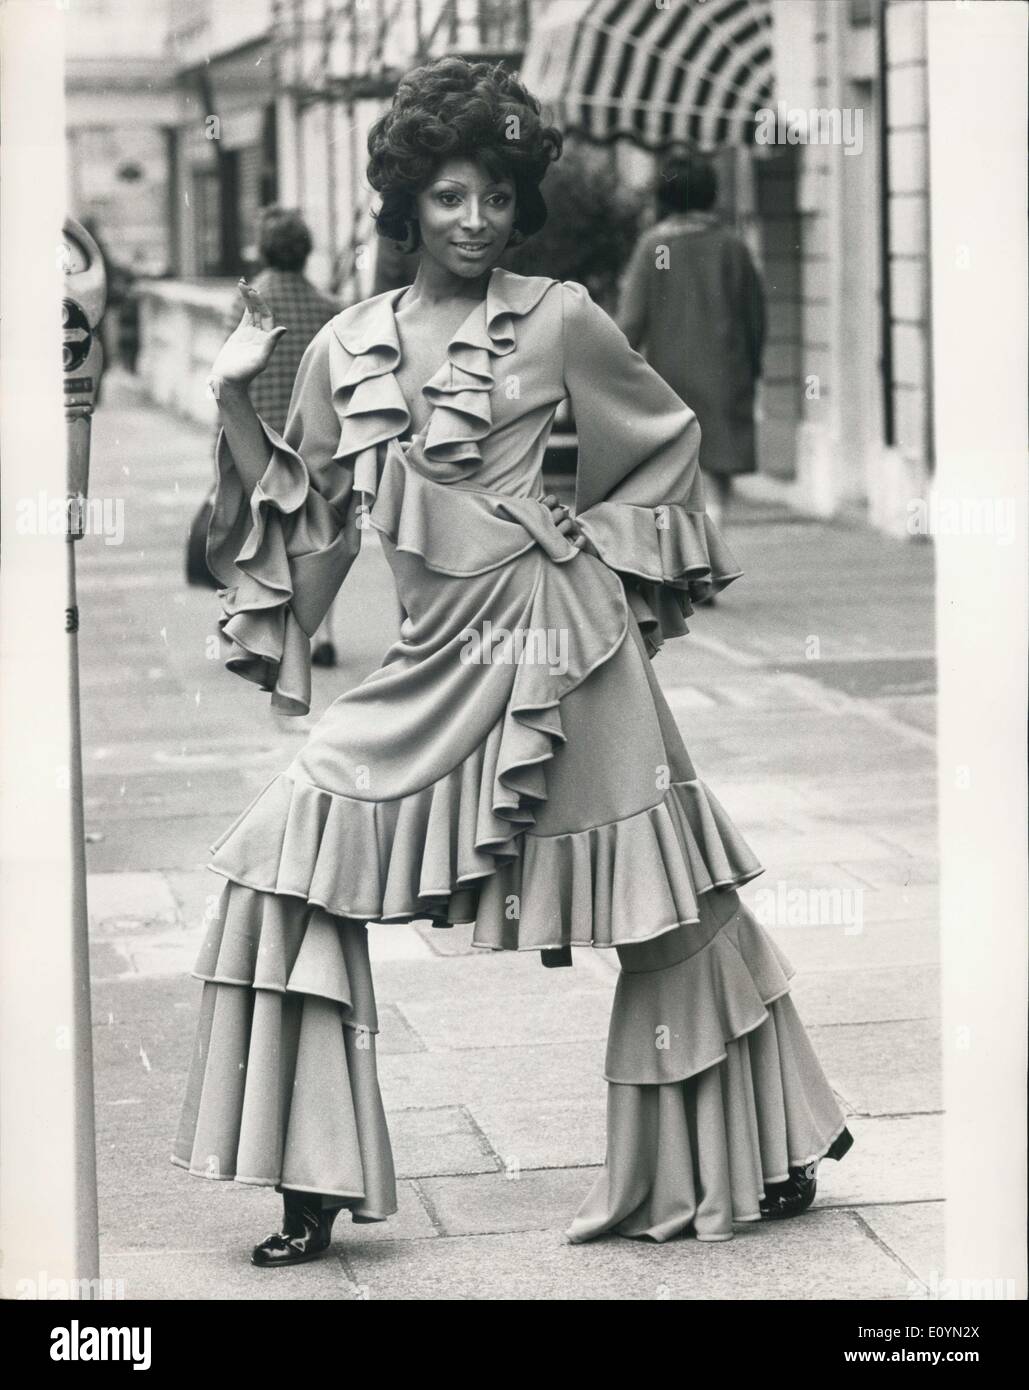 Le 10 novembre 1970 - Fashion Show à Londres : Exquisite Knitwear Ltd., et Tricot-France S.A., toutes deux filiales de Courtauld Ltd., amd grands fabricants de tissus de Jersey, a déclaré aujourd'hui un défilé de mode mixte à Celanese, Maison Hanove - Square, de présenter leurs gammes d'automne 1971. Modèle photo montre l'Enid porte une robe jamais post-ébouriffé avec un pantalon en jersey double Tricel crêpe. Banque D'Images